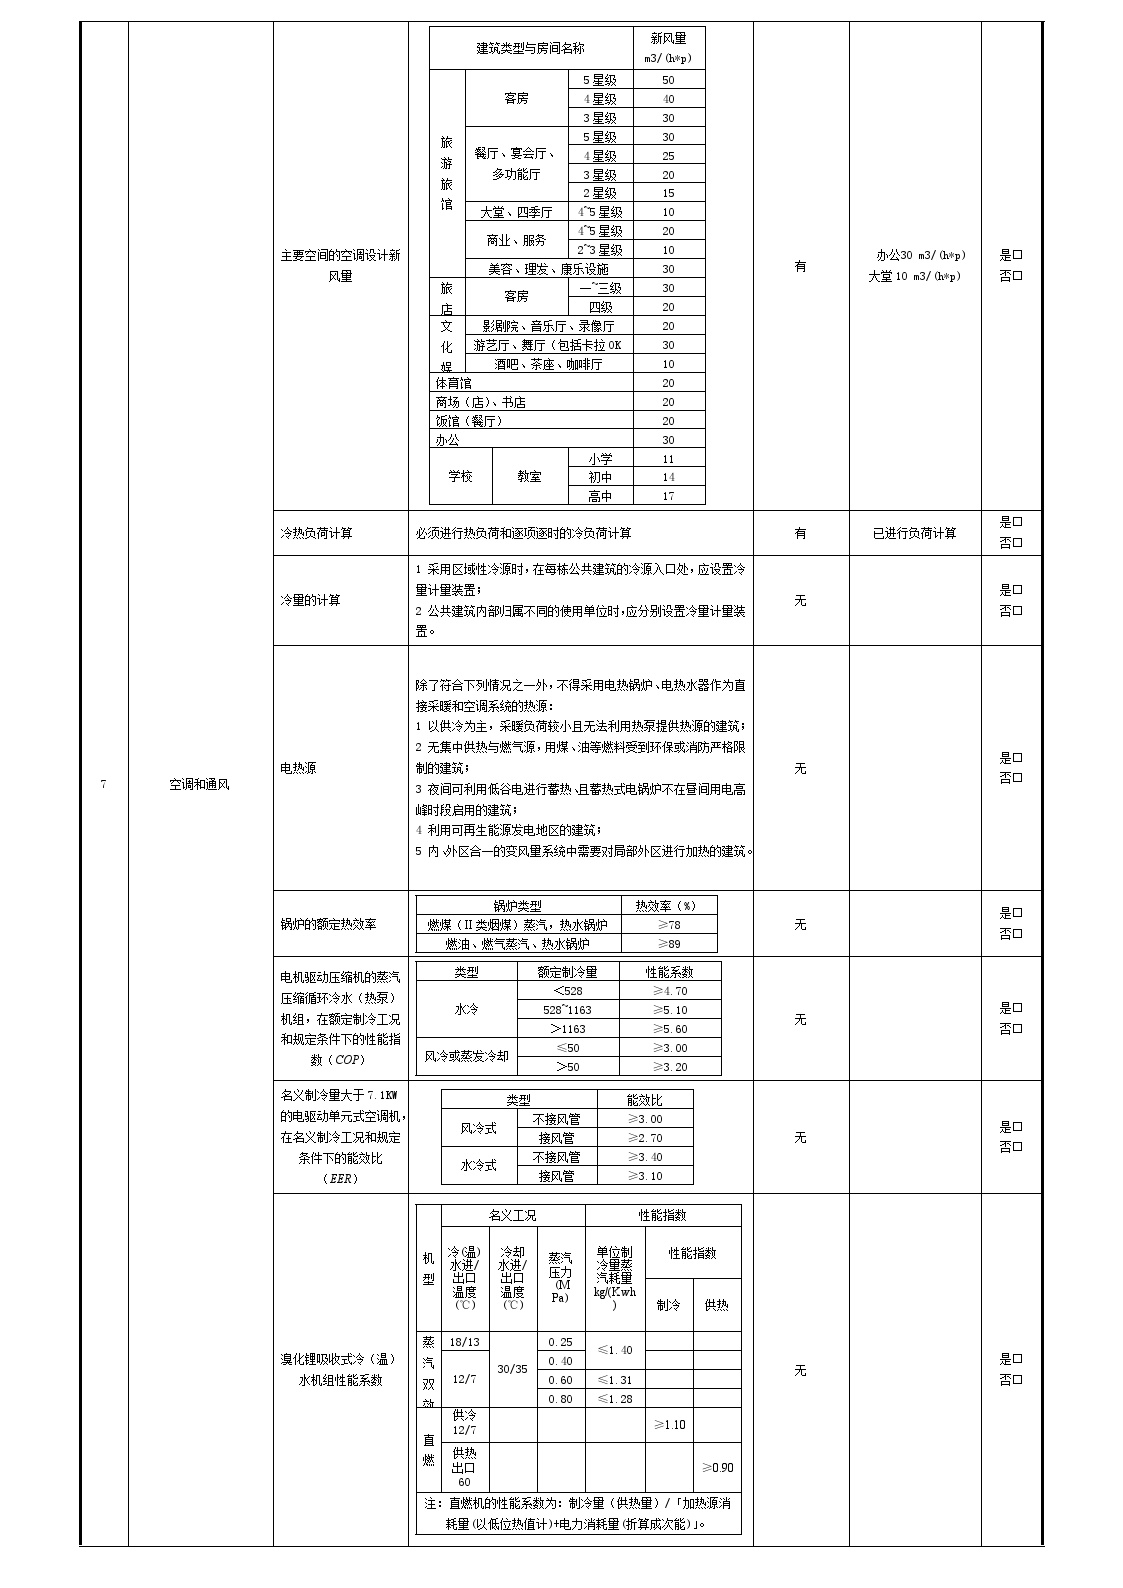 四期15# 居住建筑节能设计报审表2015.01.16_20211021102015.doc-图二